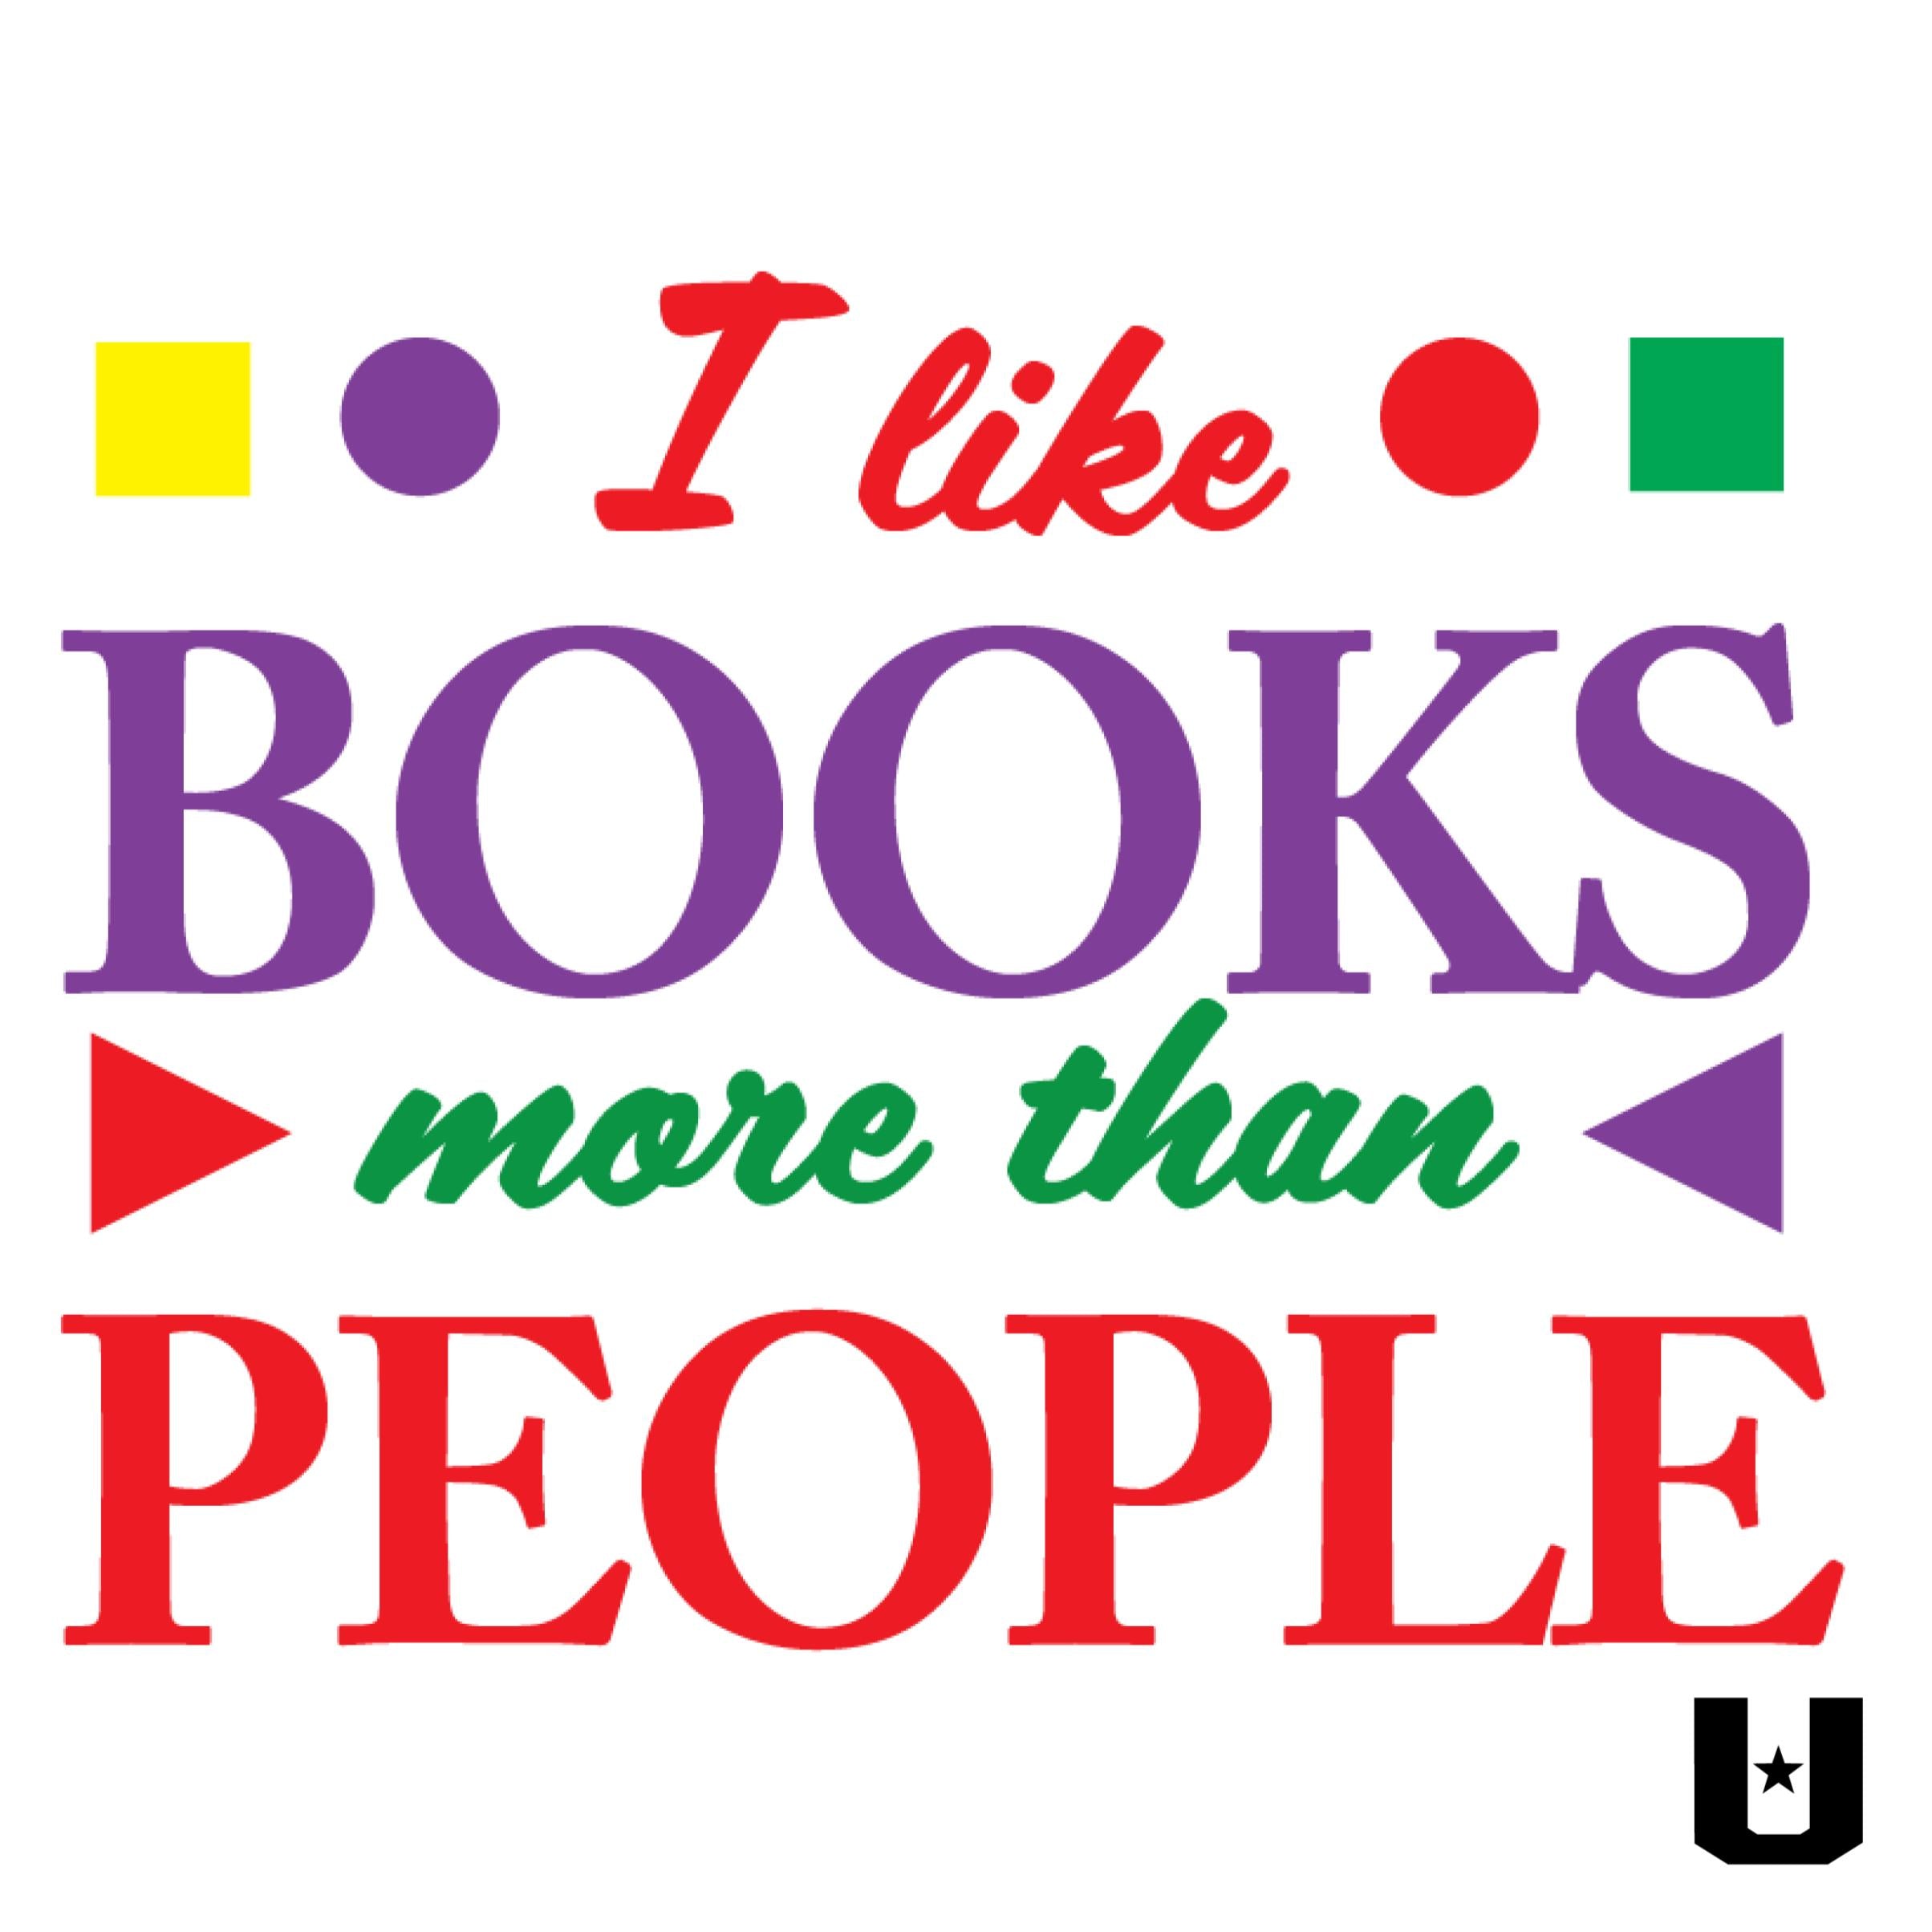 Books > People